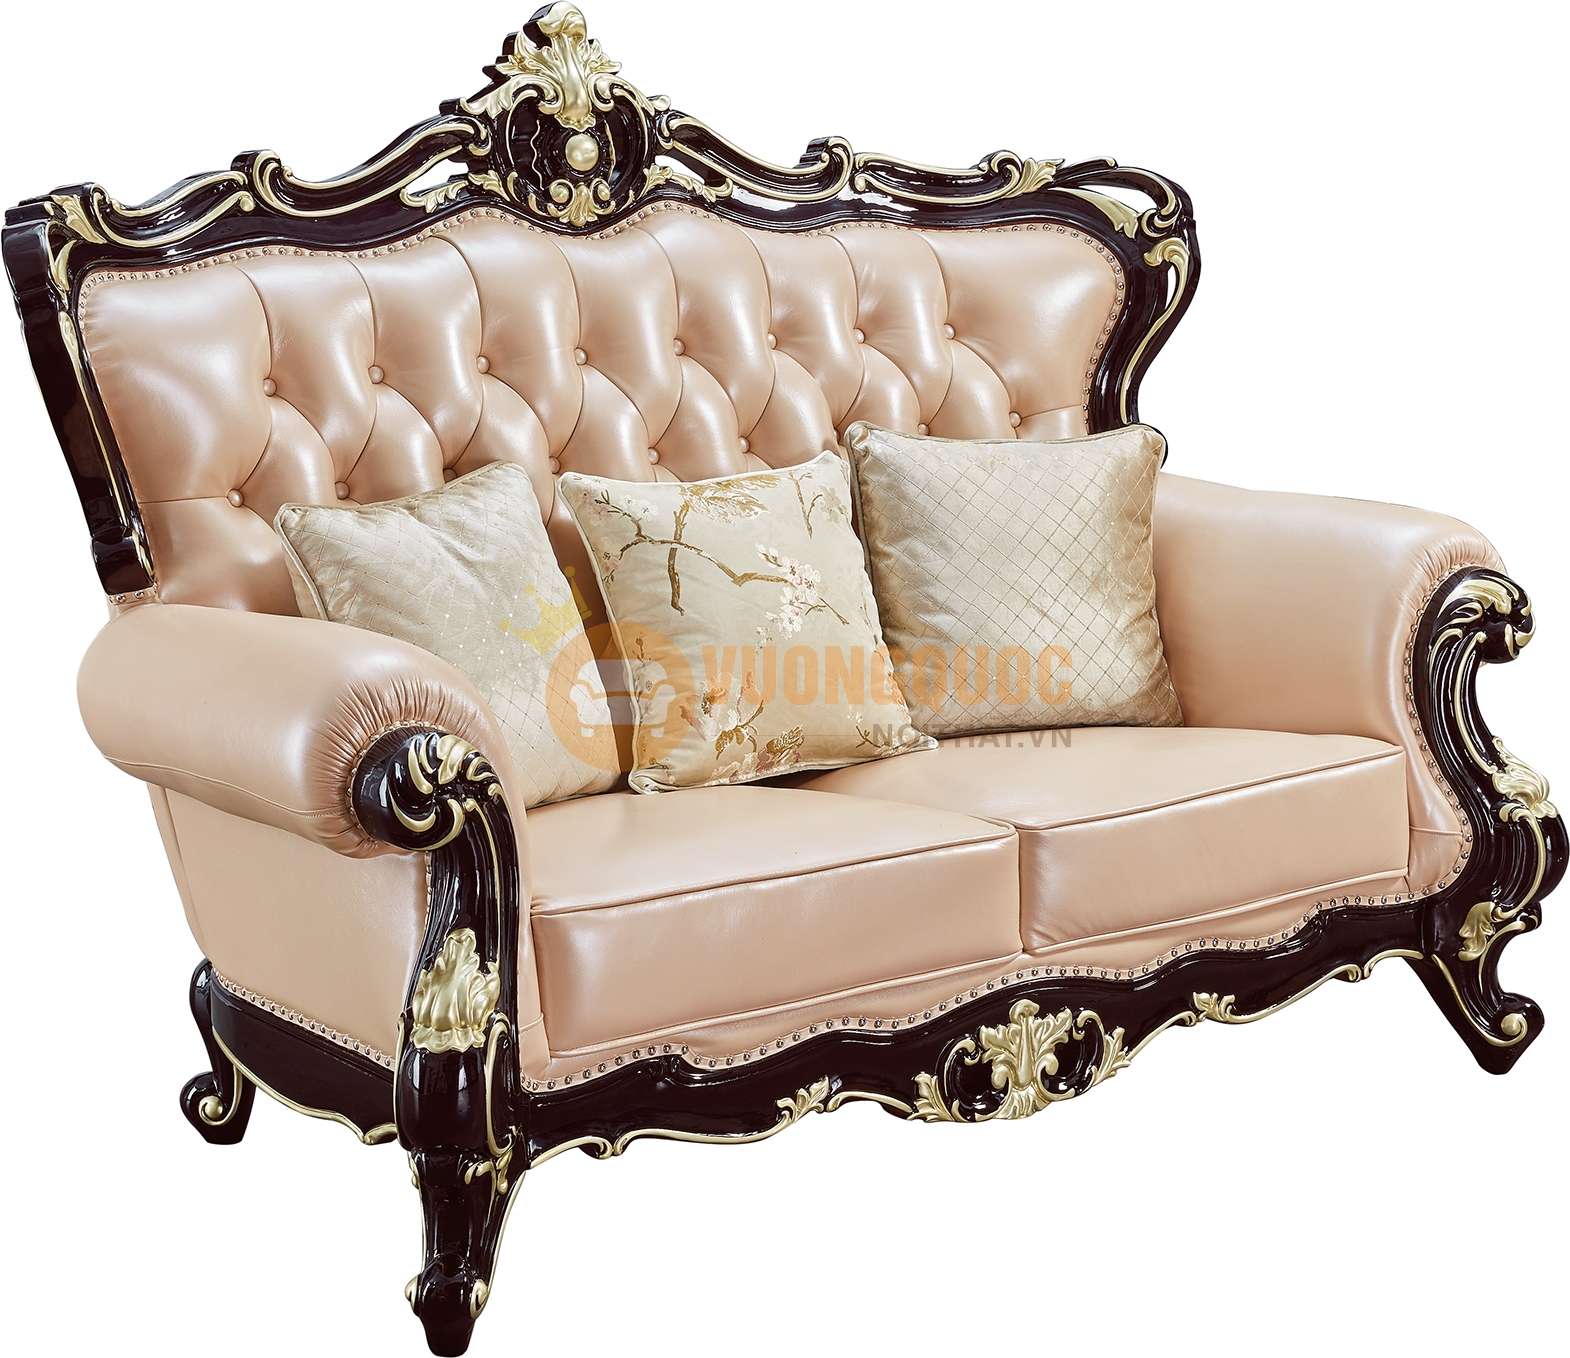 Bộ sofa phòng khách tân cổ điển cao cấp nhập khẩu JVN6911AS